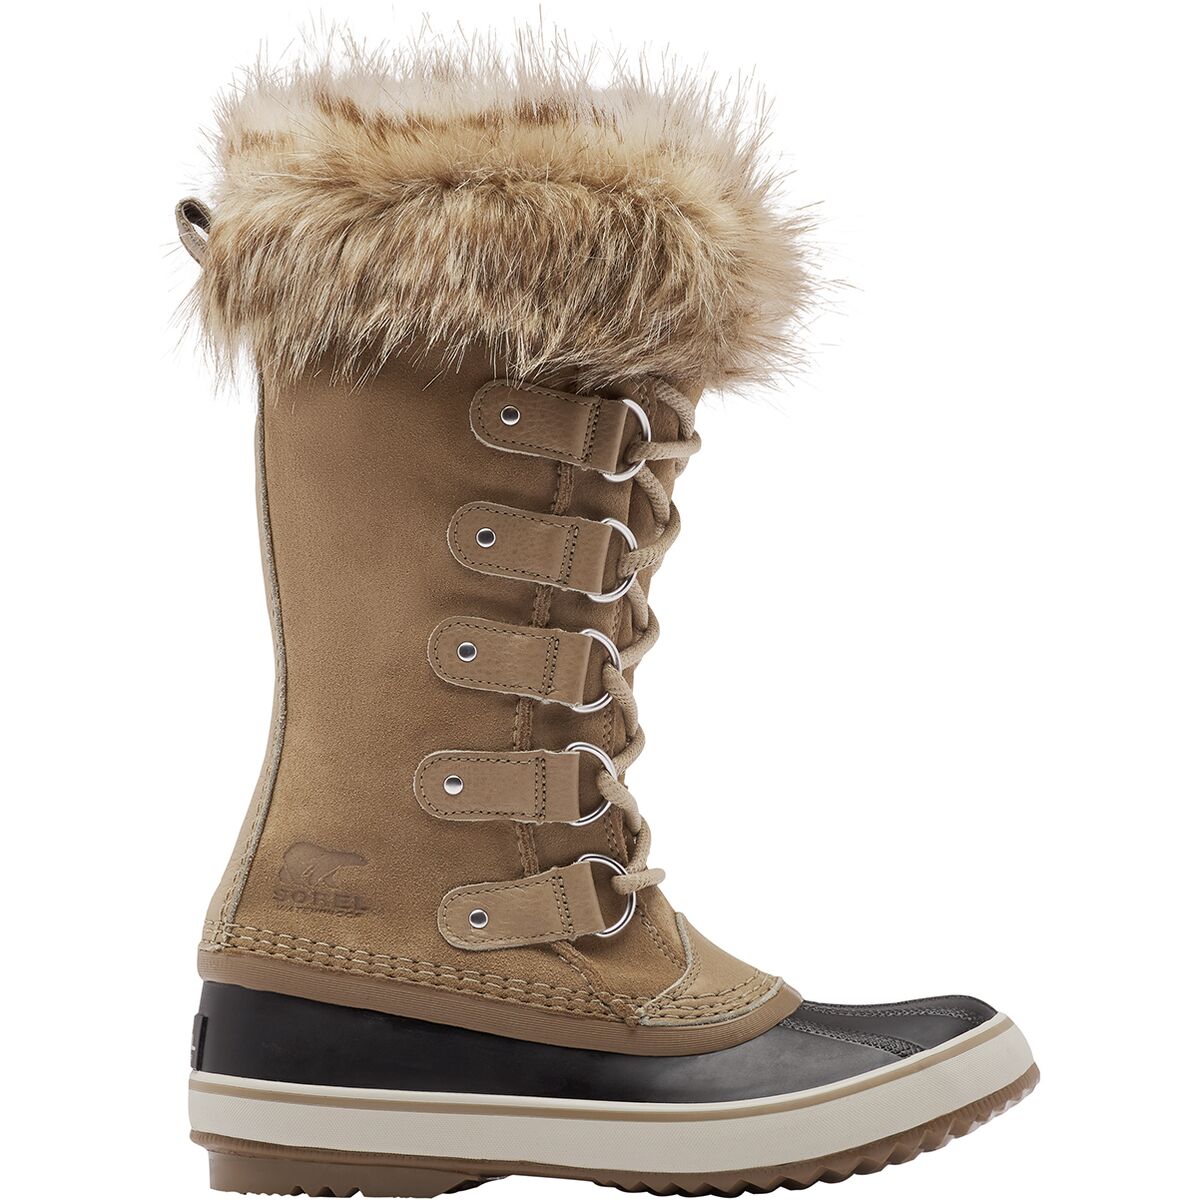 women's arctic boots